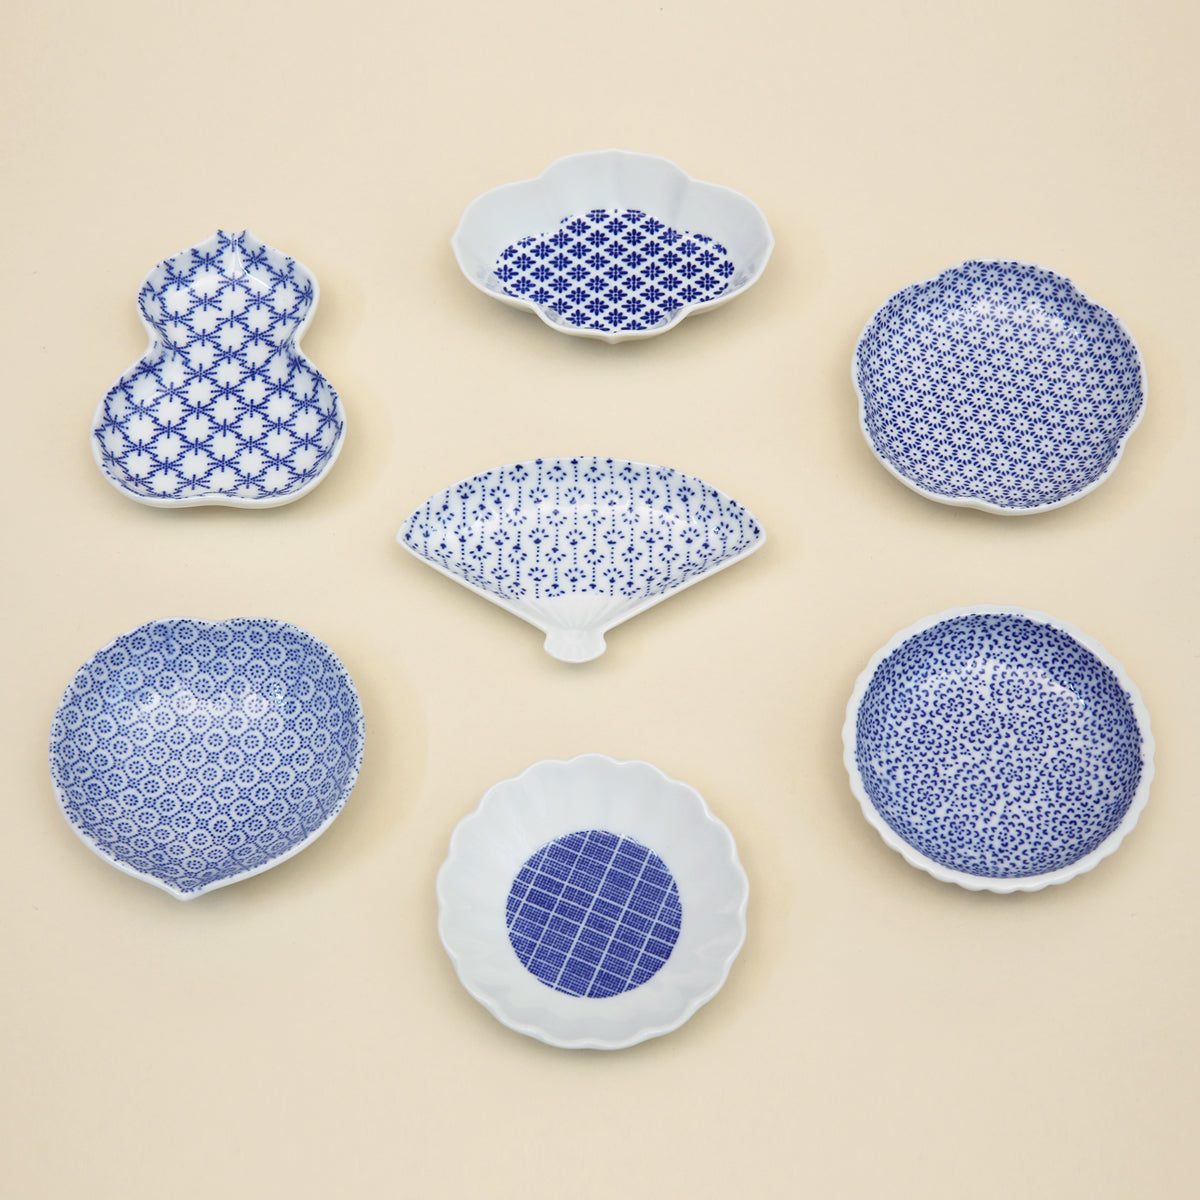 Small Ceramic Dish - Ume